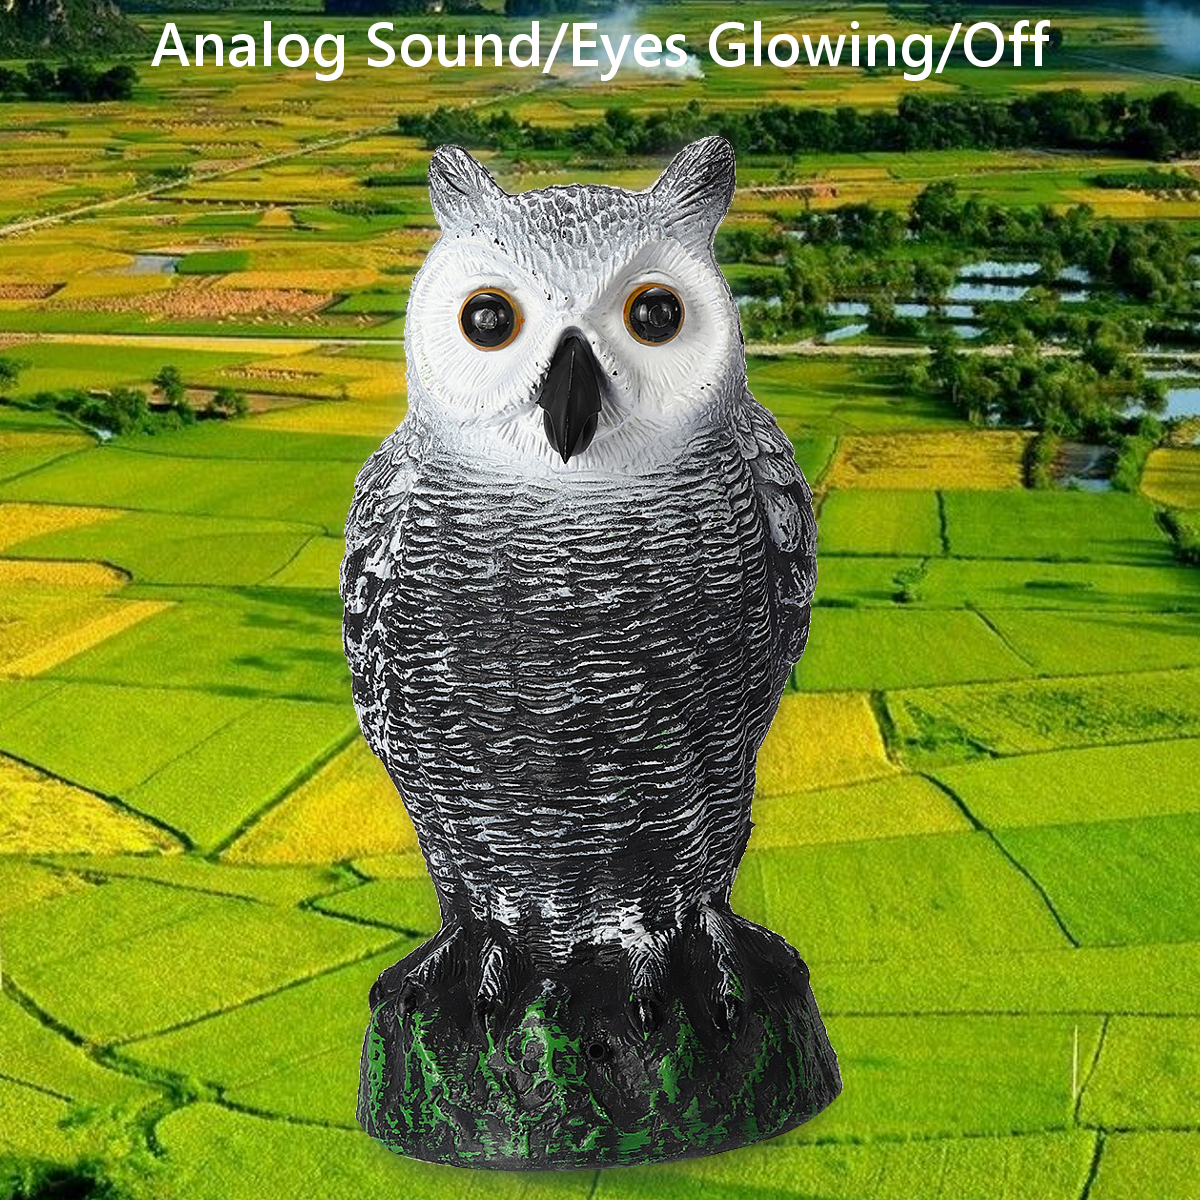 Dummy-Owl-Hunting-Decoy-Glowing-Eyes-Sound-Garden-Decor-1639223-5